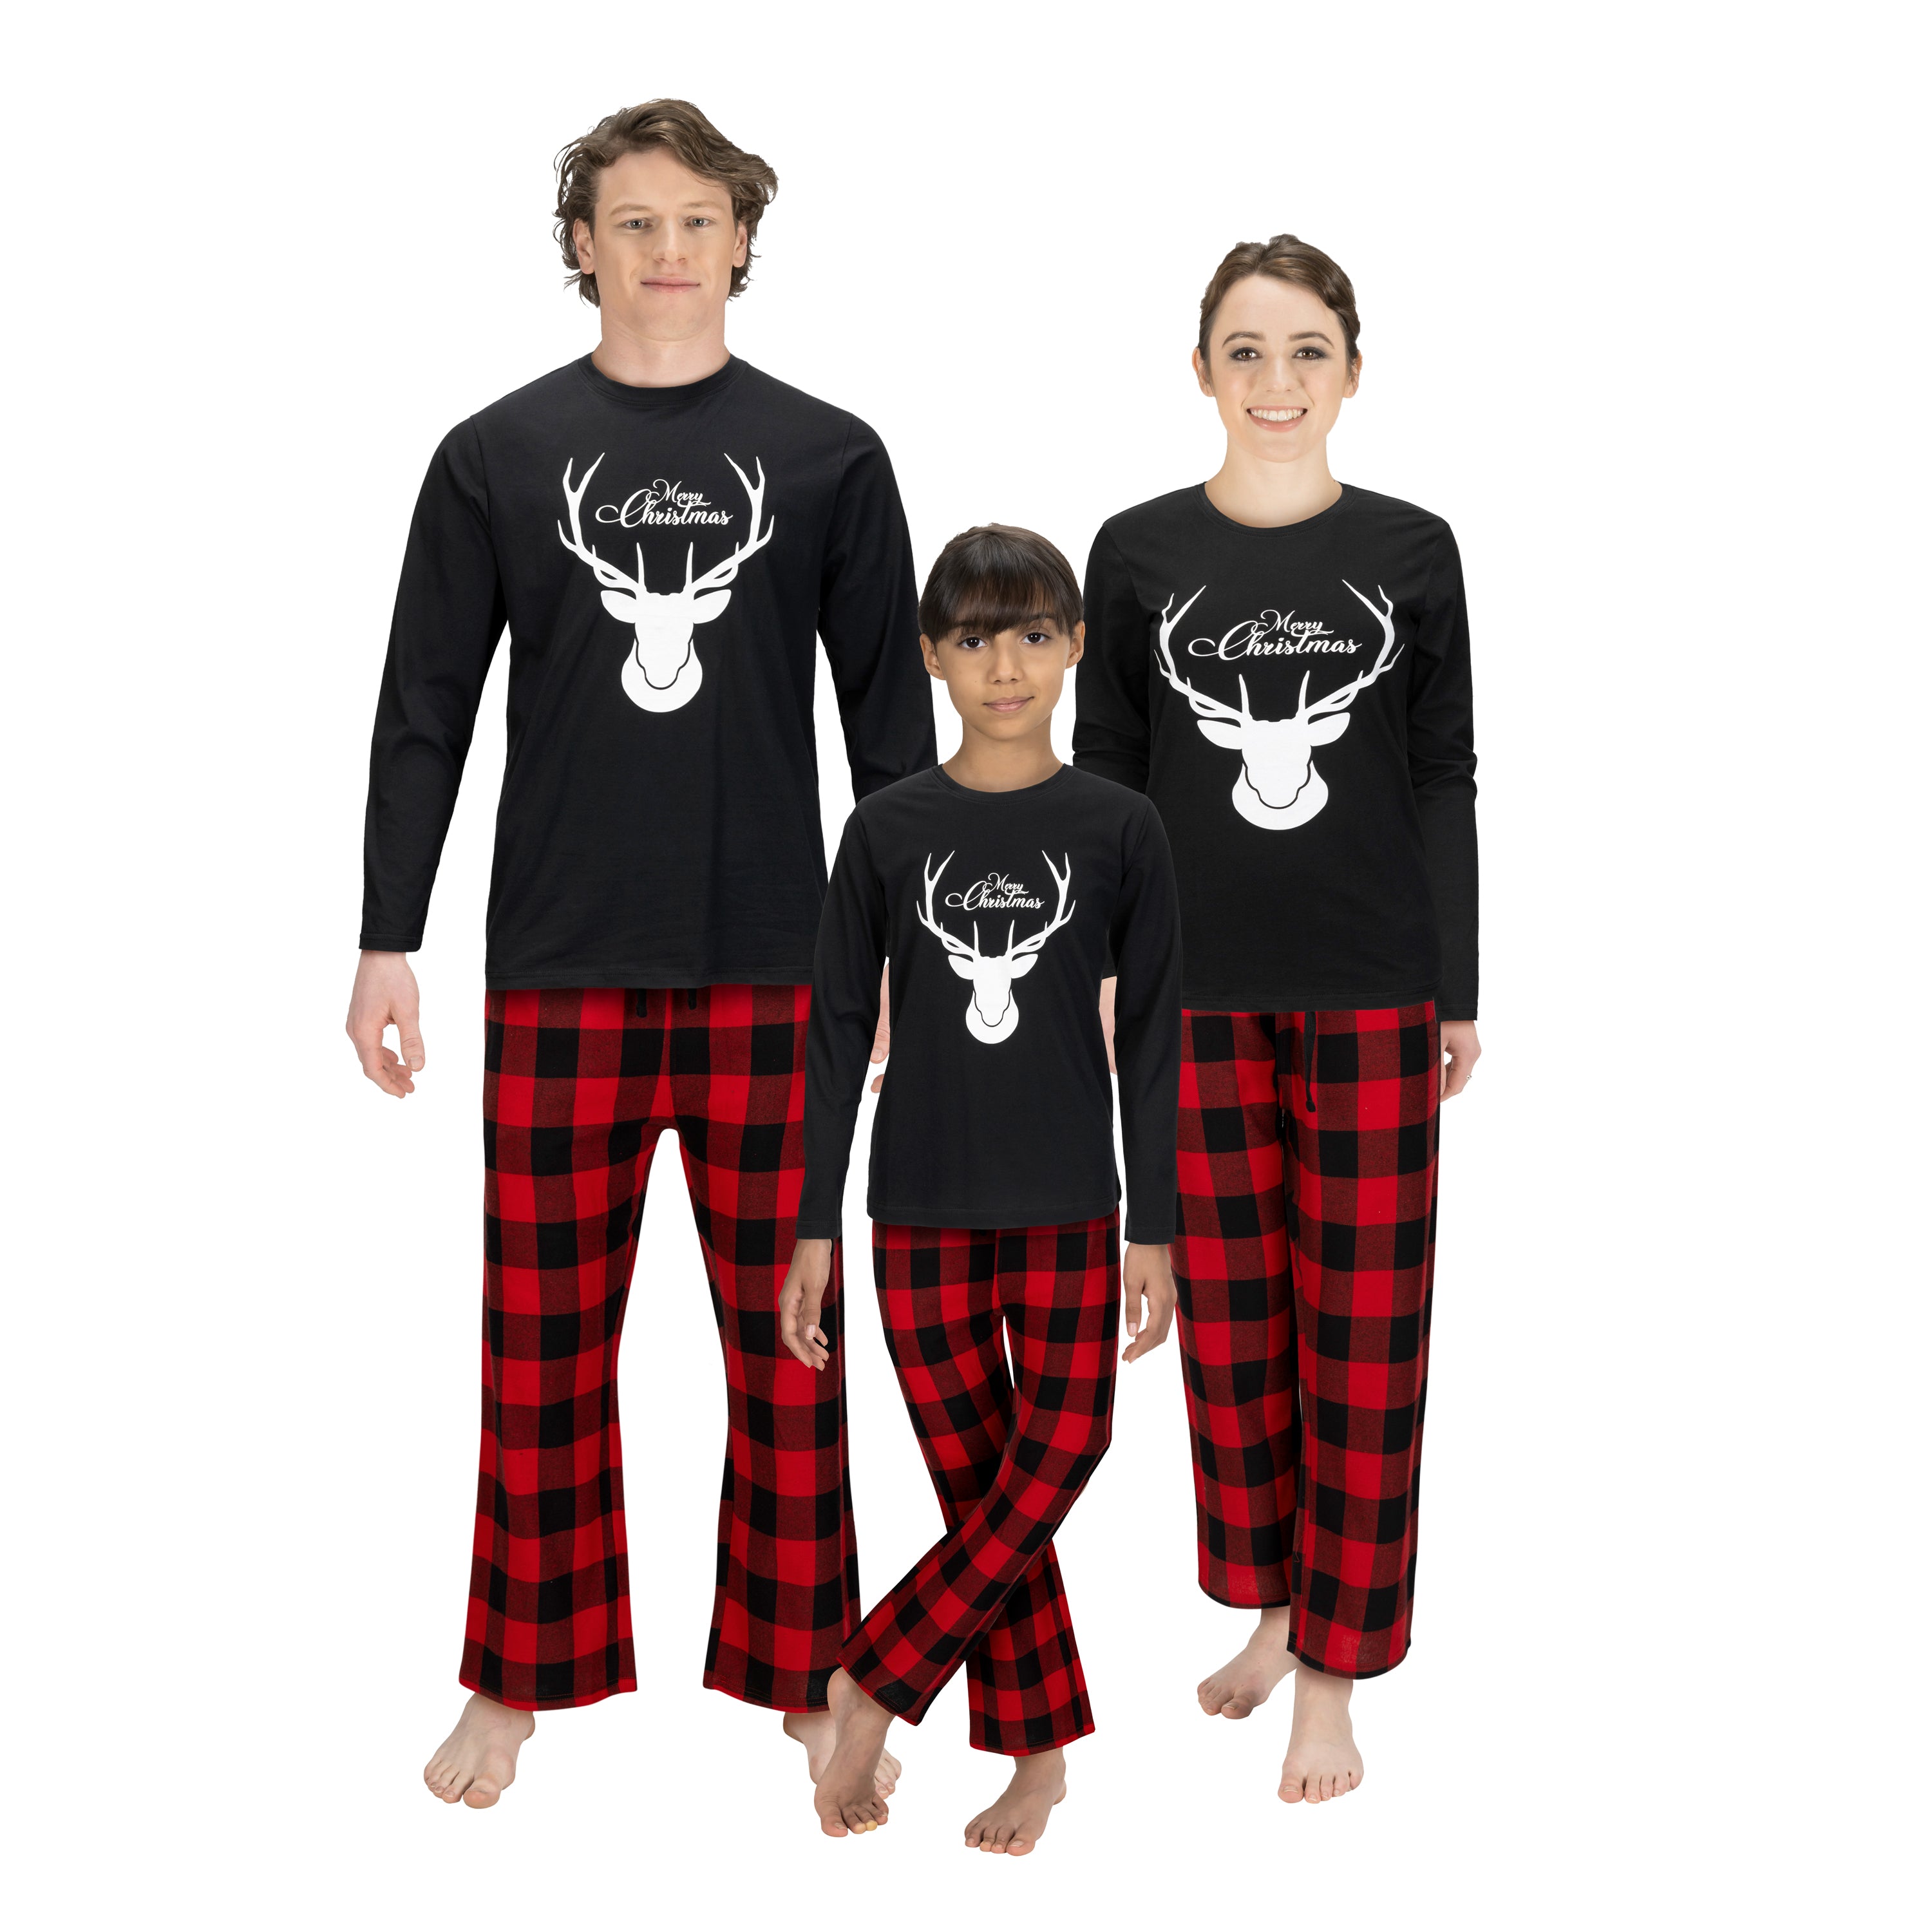 ON SALE NOW Matching Family Pajama Sets Christmas Pajamas Holiday Pajamas  Family Pjs Red & Black Buffalo 